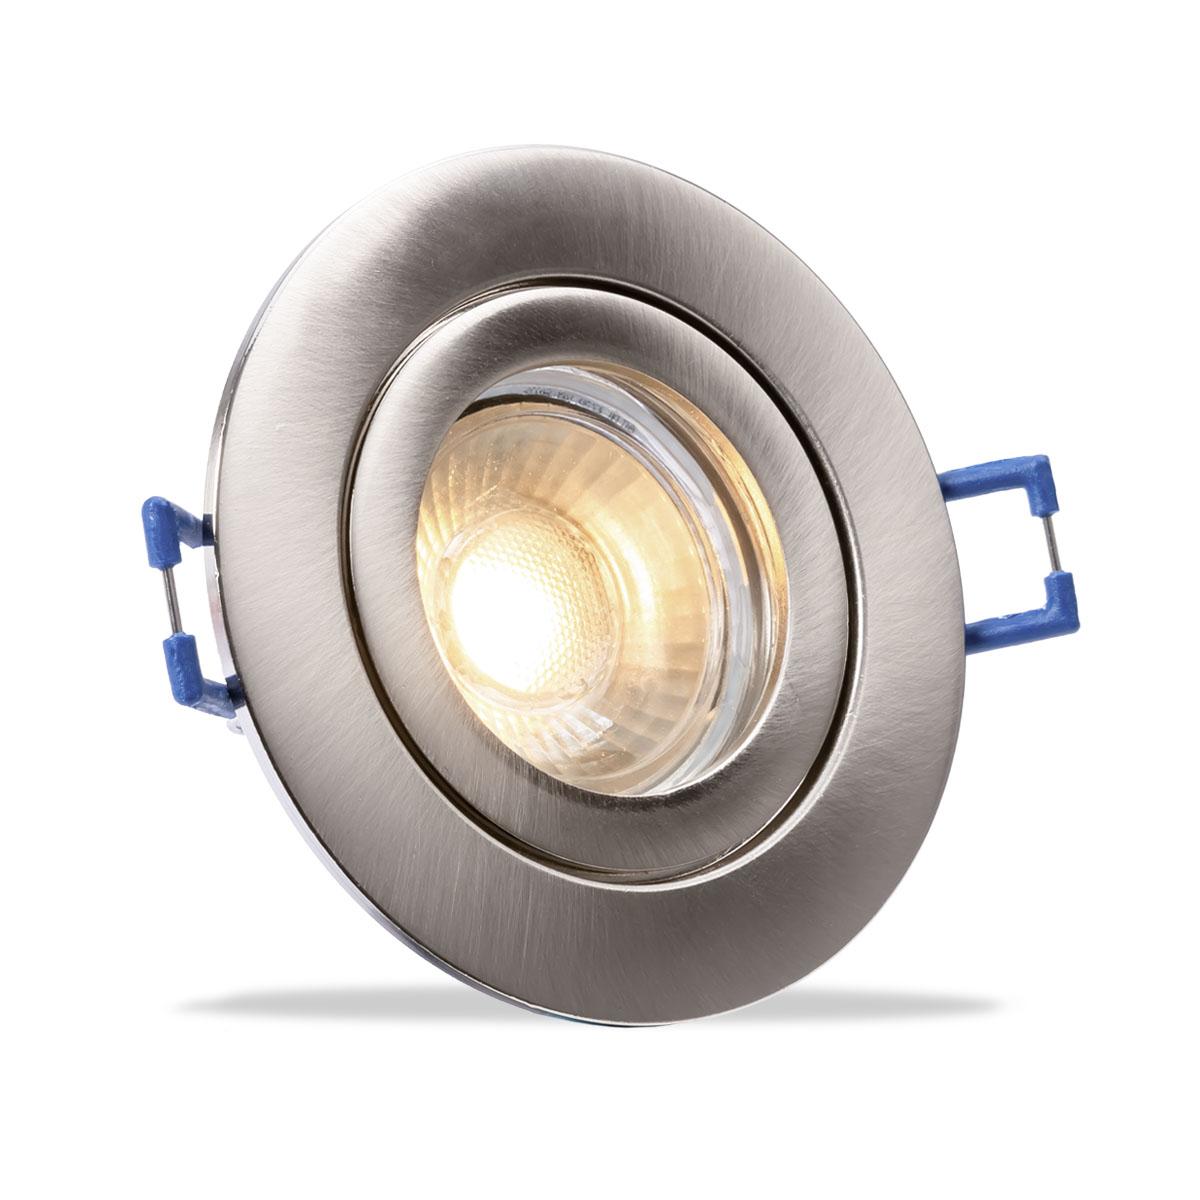 Einbauspot IP44 rund - Abdeckring:  Edelstahl-gebürstet - LED Leuchtmittel:  GU10 5W neutralweiß